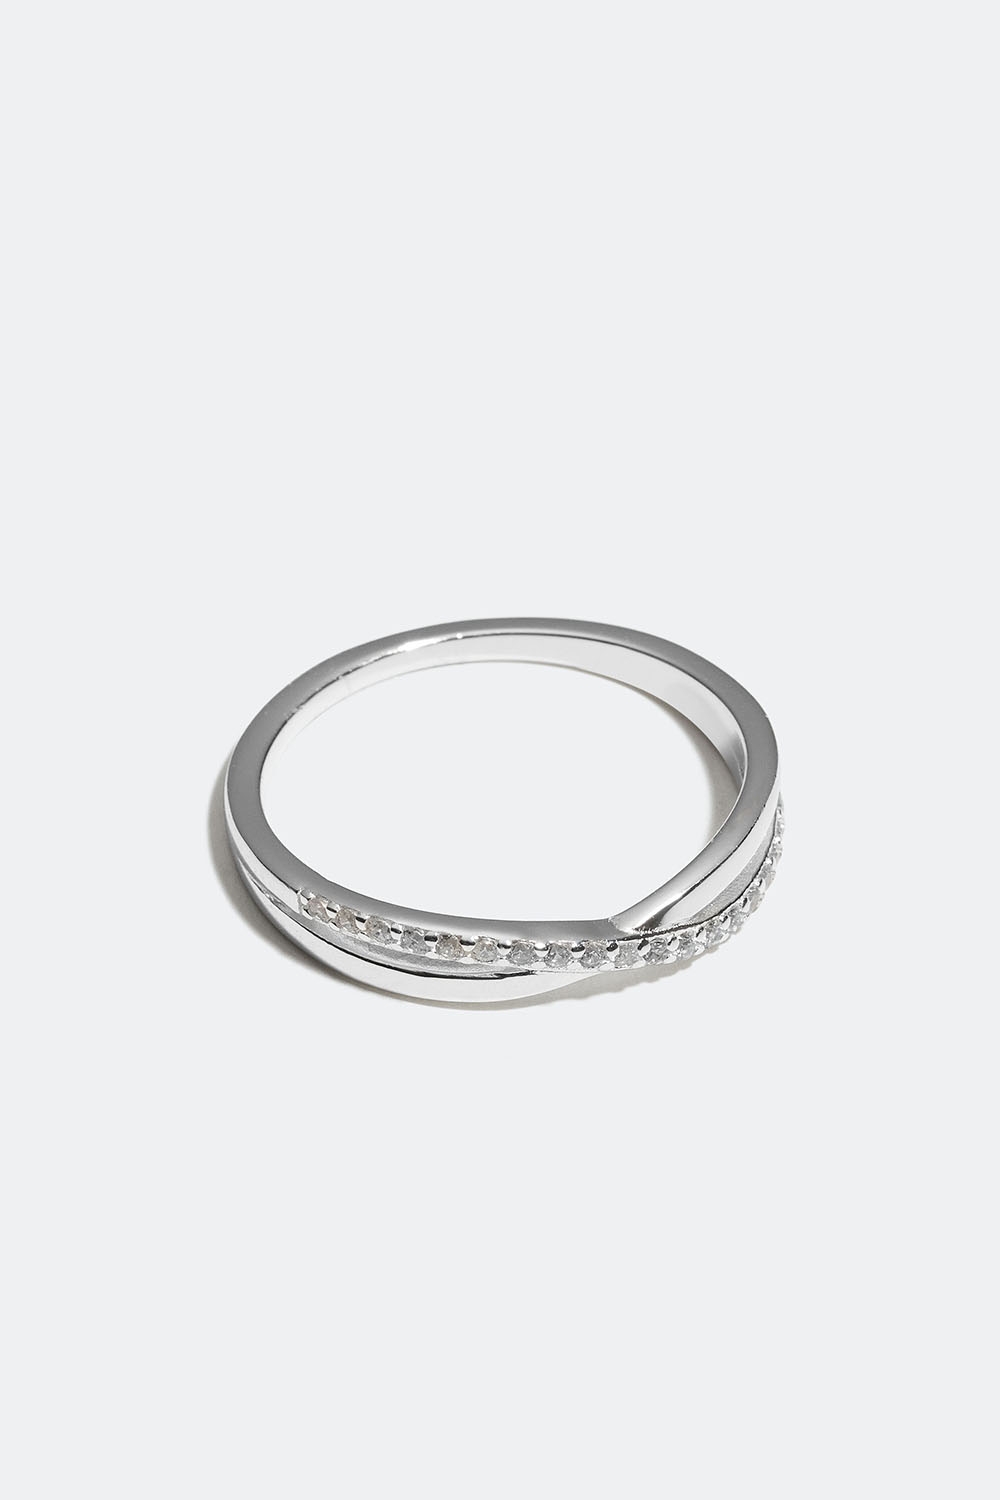 Ring i ægte sølv med krydset design og kubisk zirkonia i gruppen Ægte sølv / Sølvringe / Sølv hos Glitter (55600065)